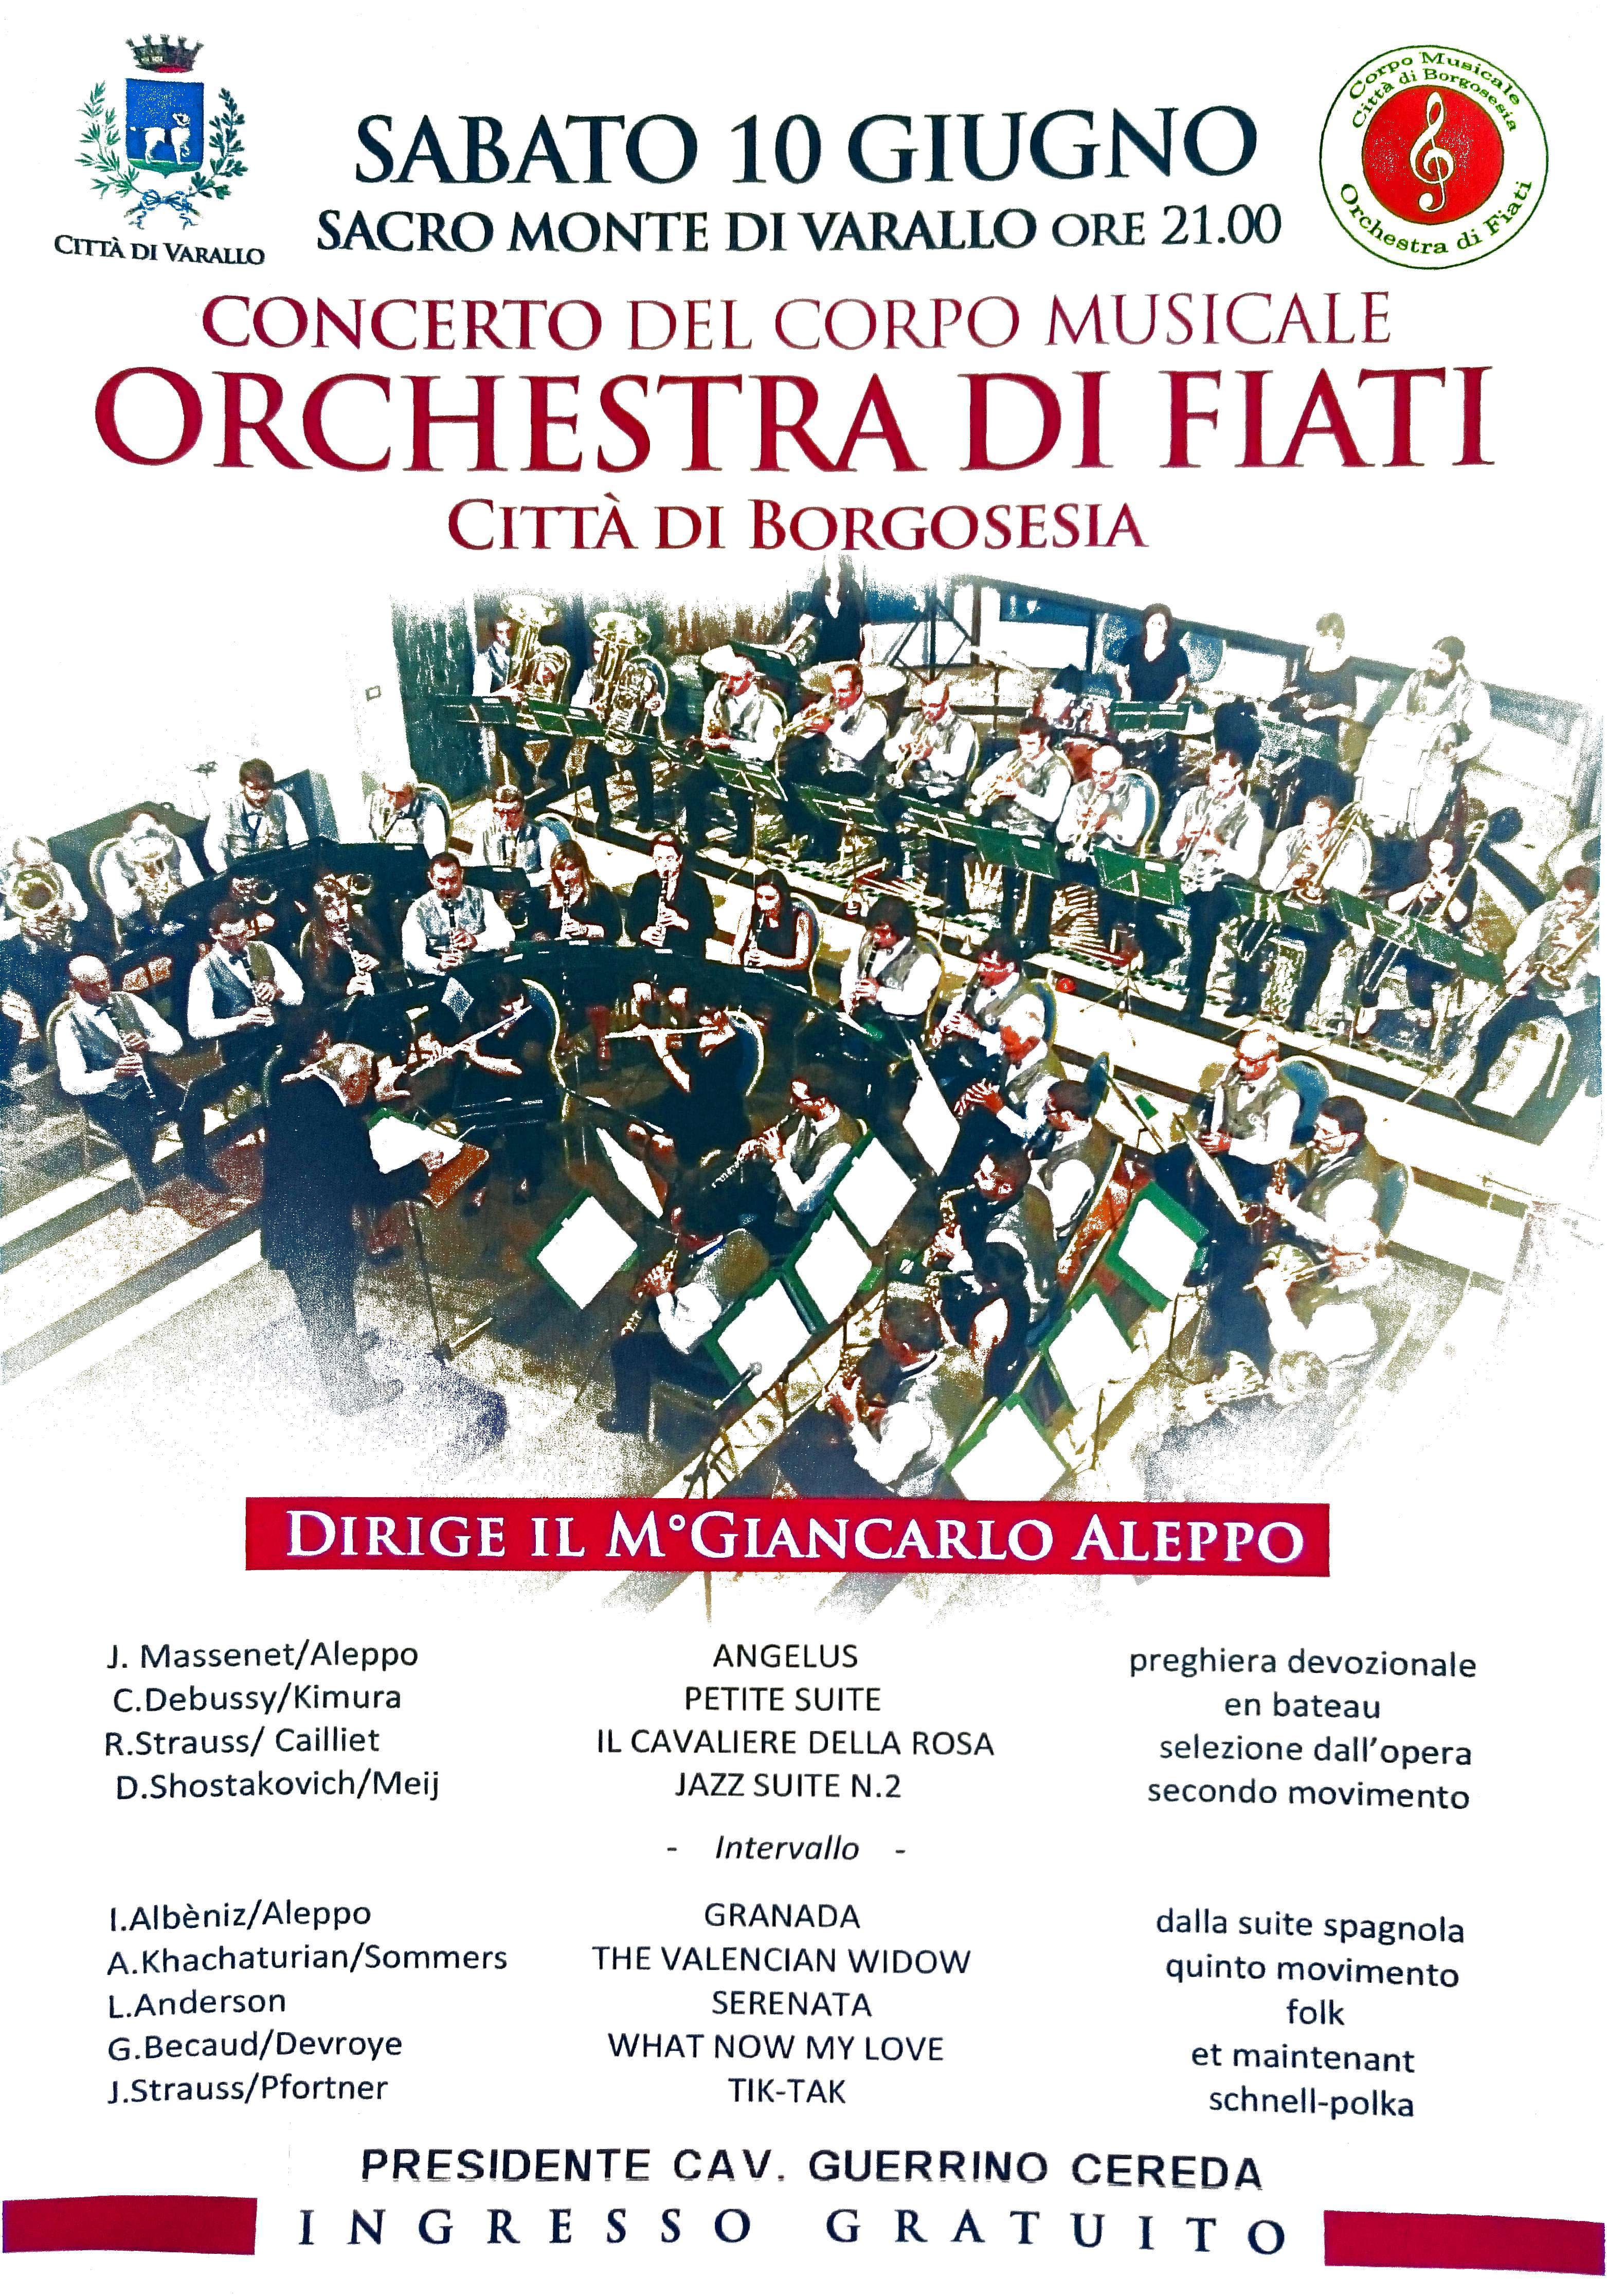 Concerto al Sacro Monte – Sabato 10 giugno – Orchestra di Fiati